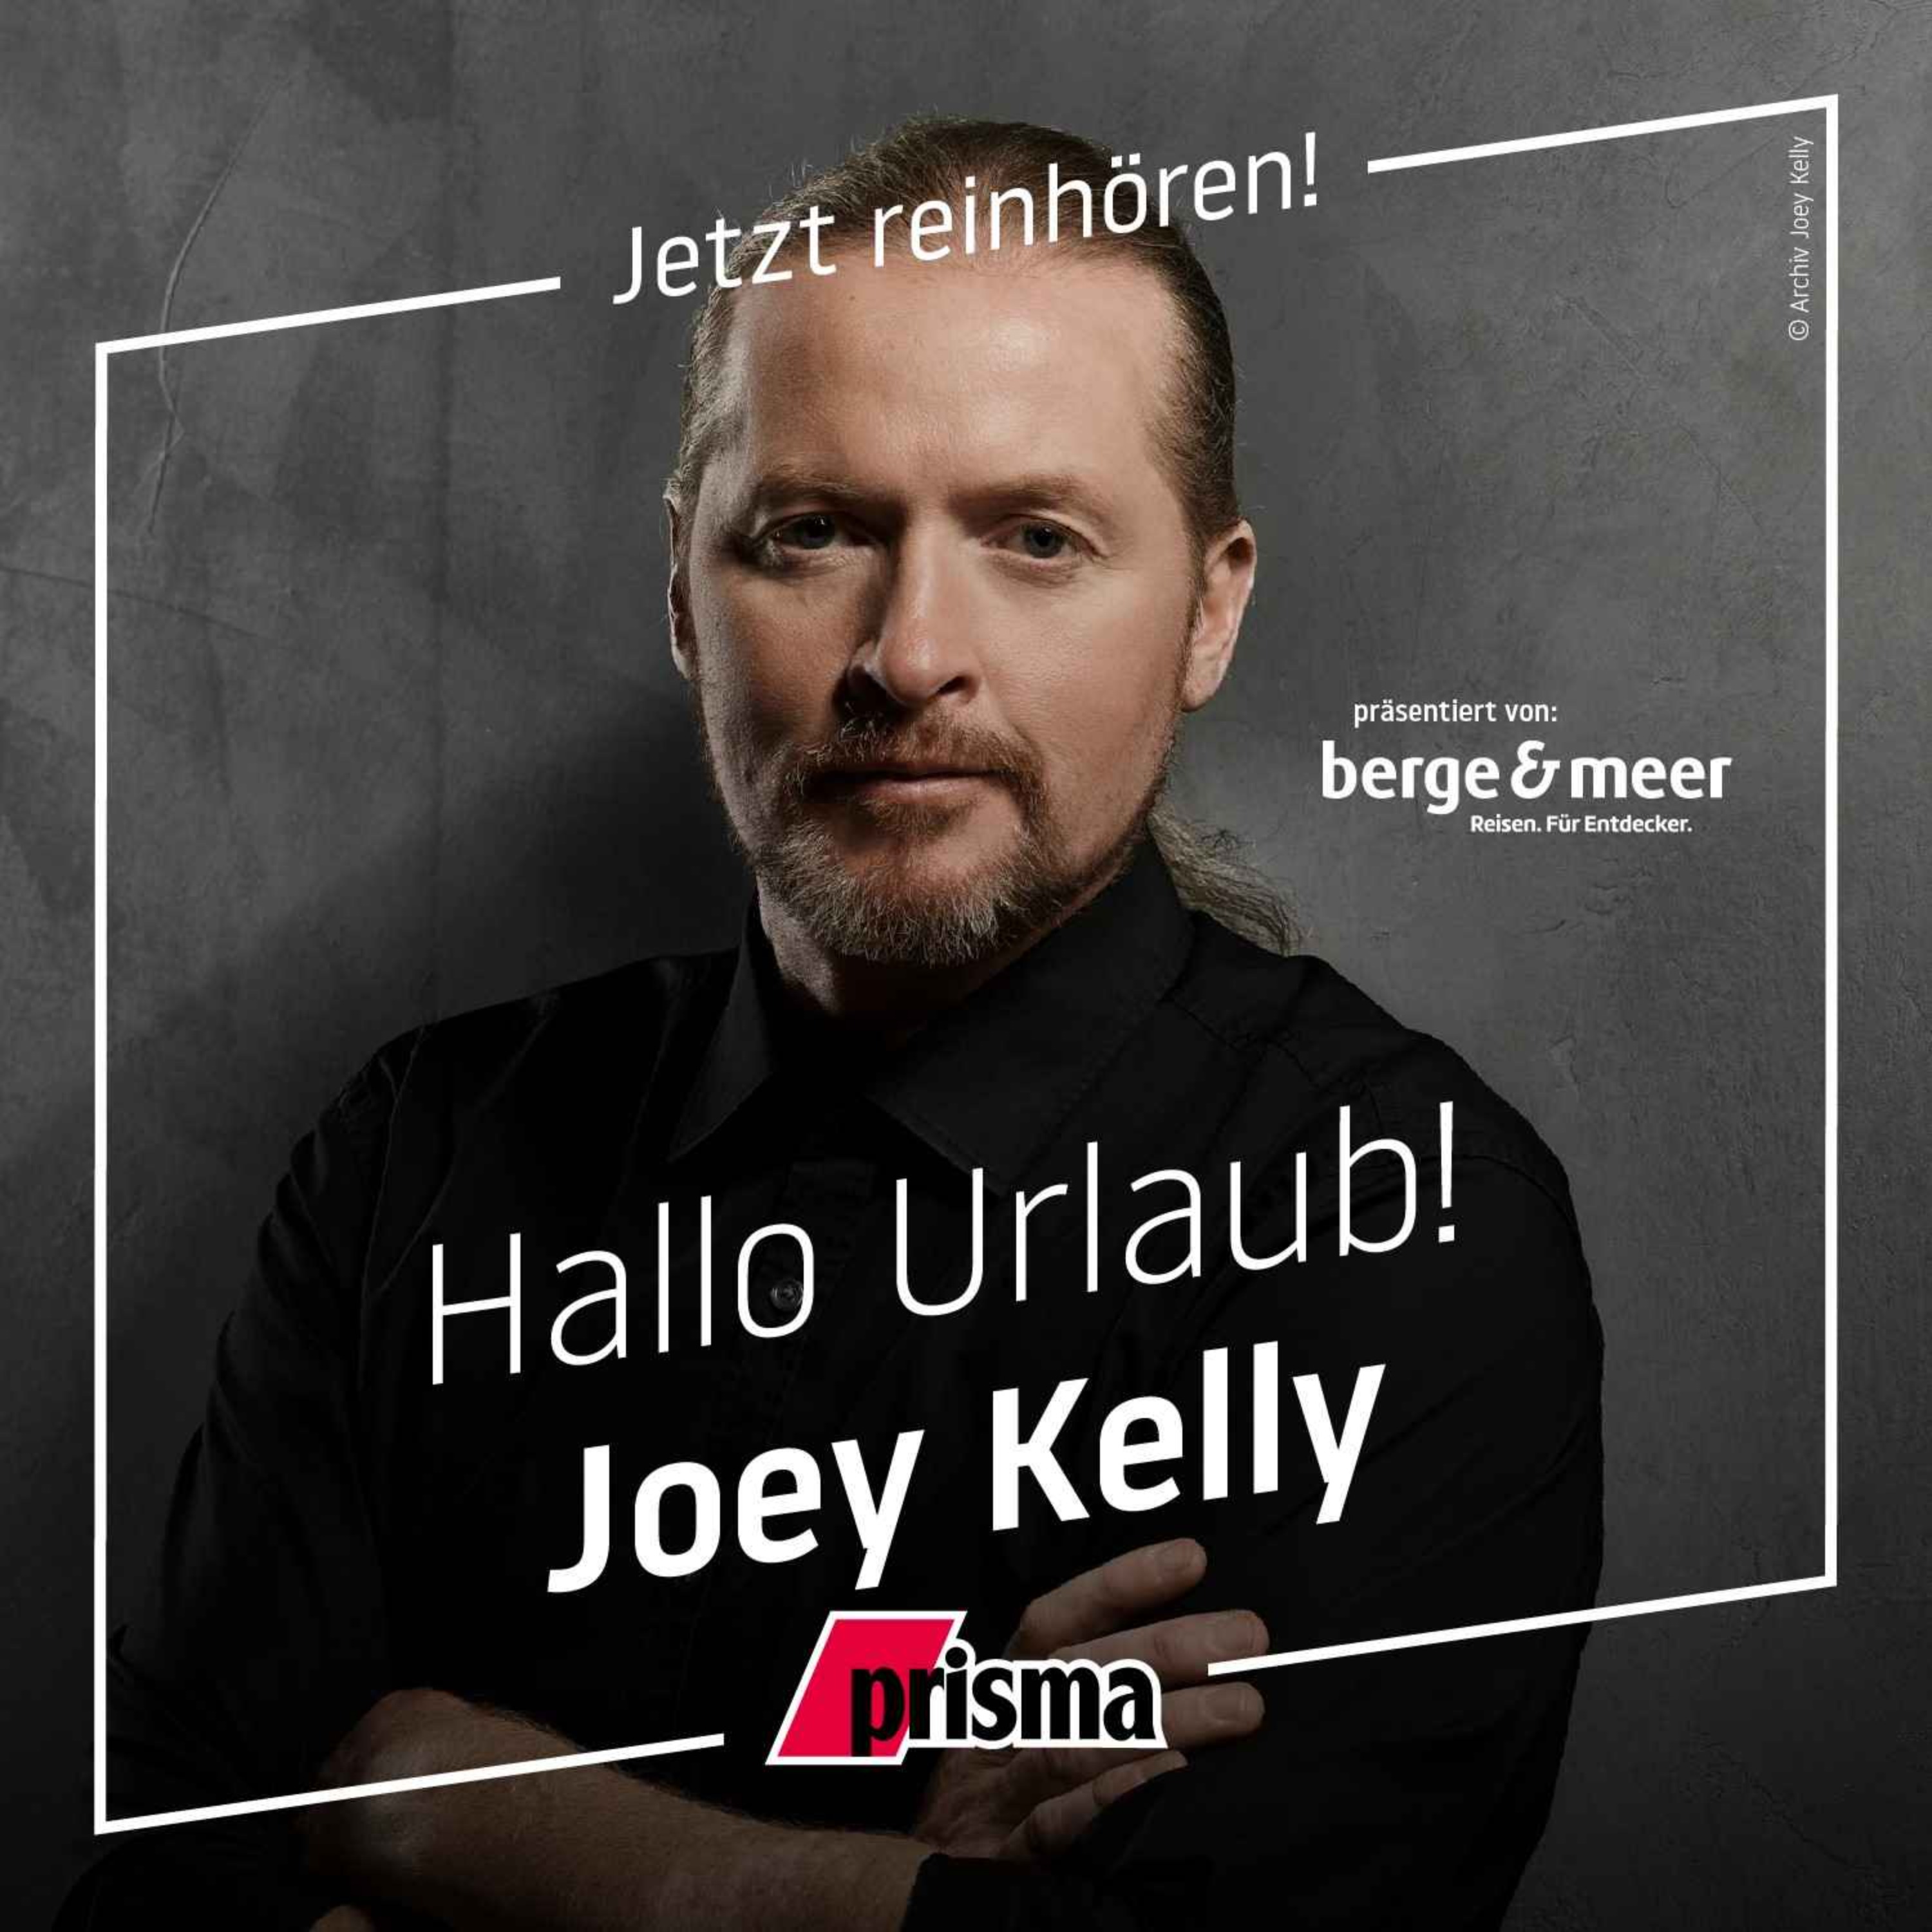 Joey Kelly – vom Musiker zum Extremsportler (2)